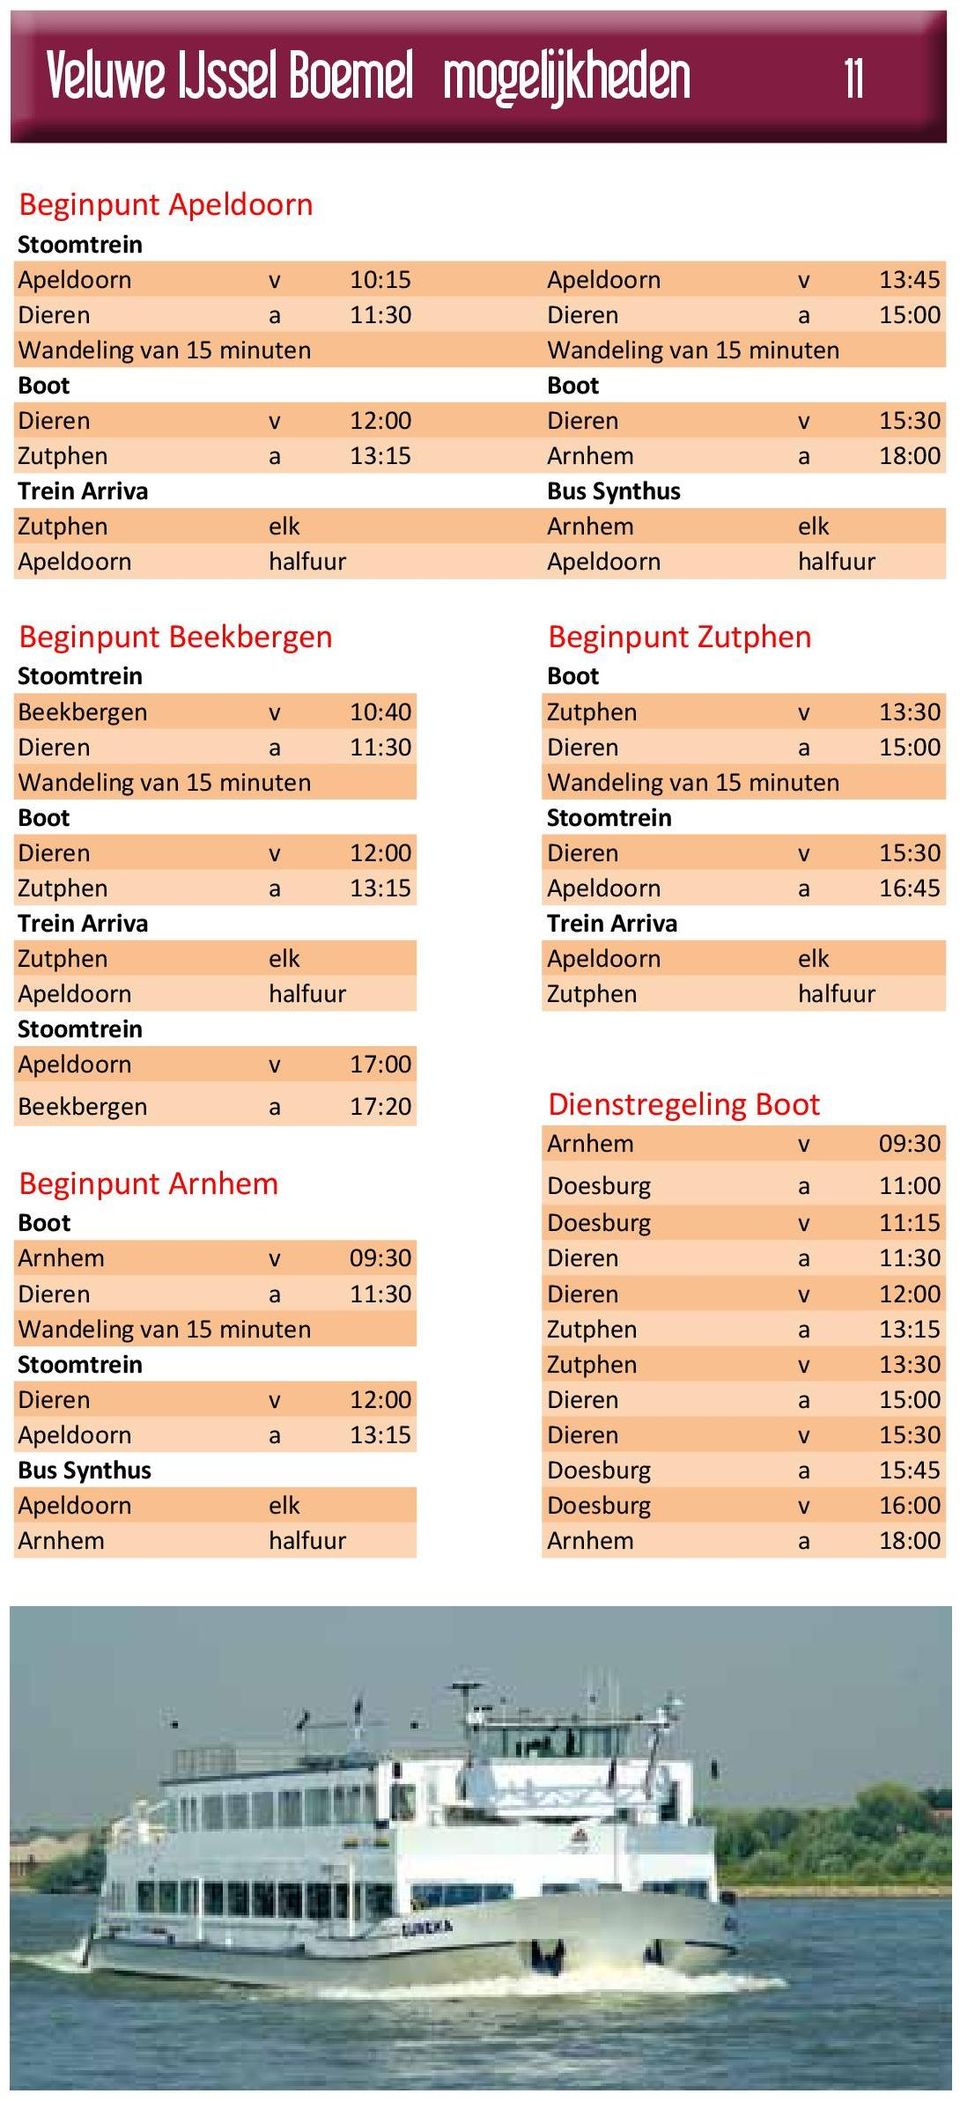 Beekbergen v 10:40 Zutphen v 13:30 Dieren a 11:30 Dieren a 15:00 Wandeling van 15 minuten Wandeling van 15 minuten Boot Stoomtrein Dieren v 12:00 Dieren v 15:30 Zutphen a 13:15 Apeldoorn a 16:45